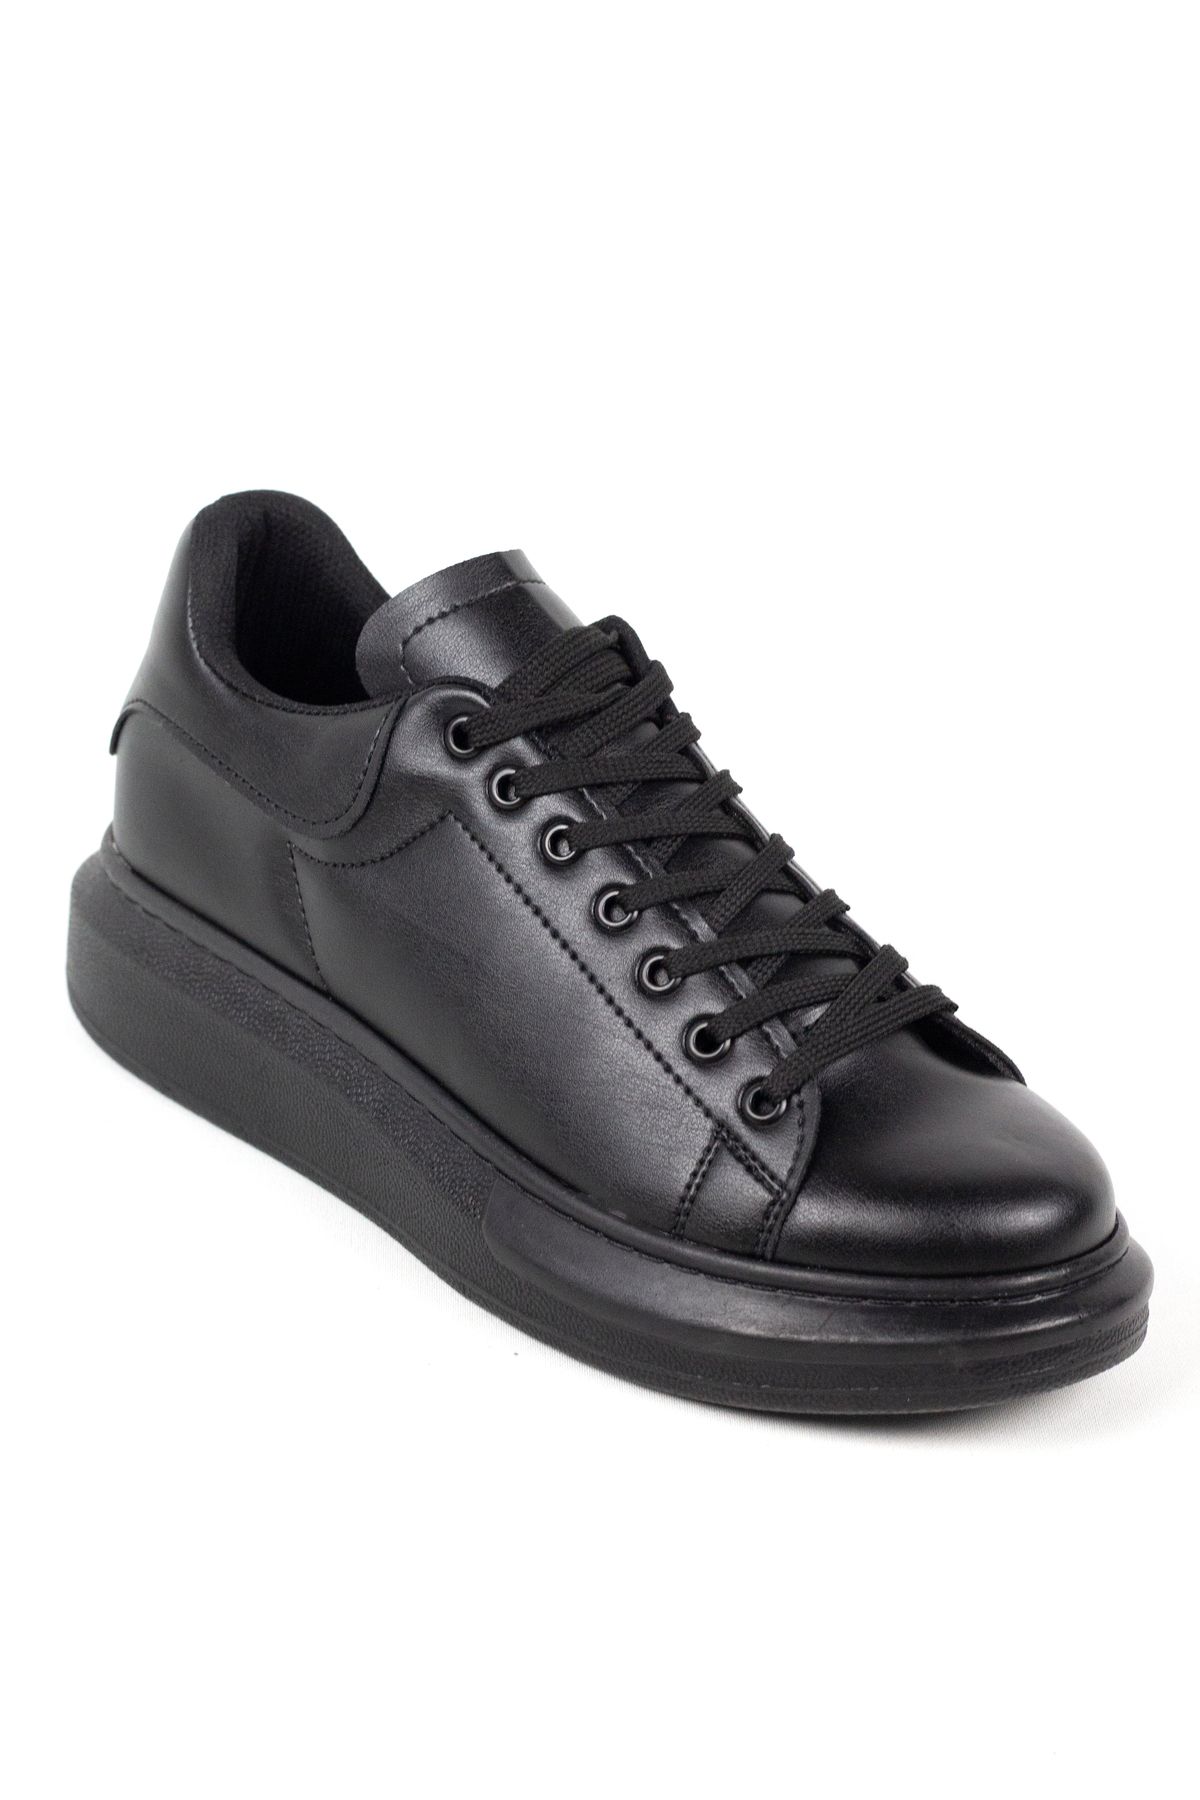 Mida Shoes Siyah Deri Bağcıklı Yüksek Tabanlı Erkek Sneaker